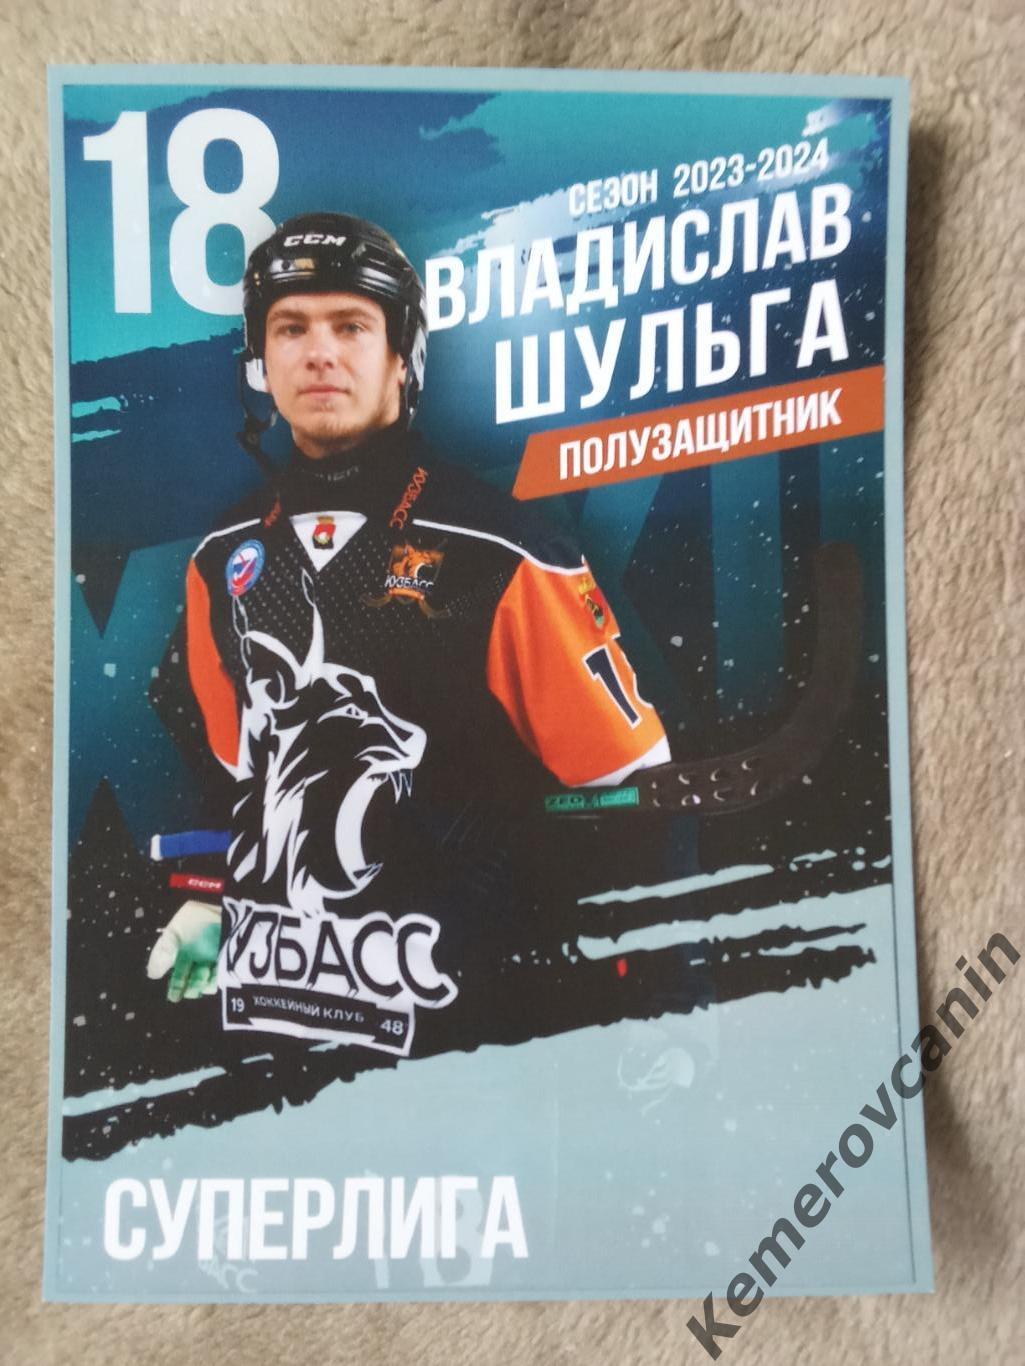 Хоккей с мячом18 Владислав Шульга Кузбасс Кемерово чемпион 2023/2024 карточка А5